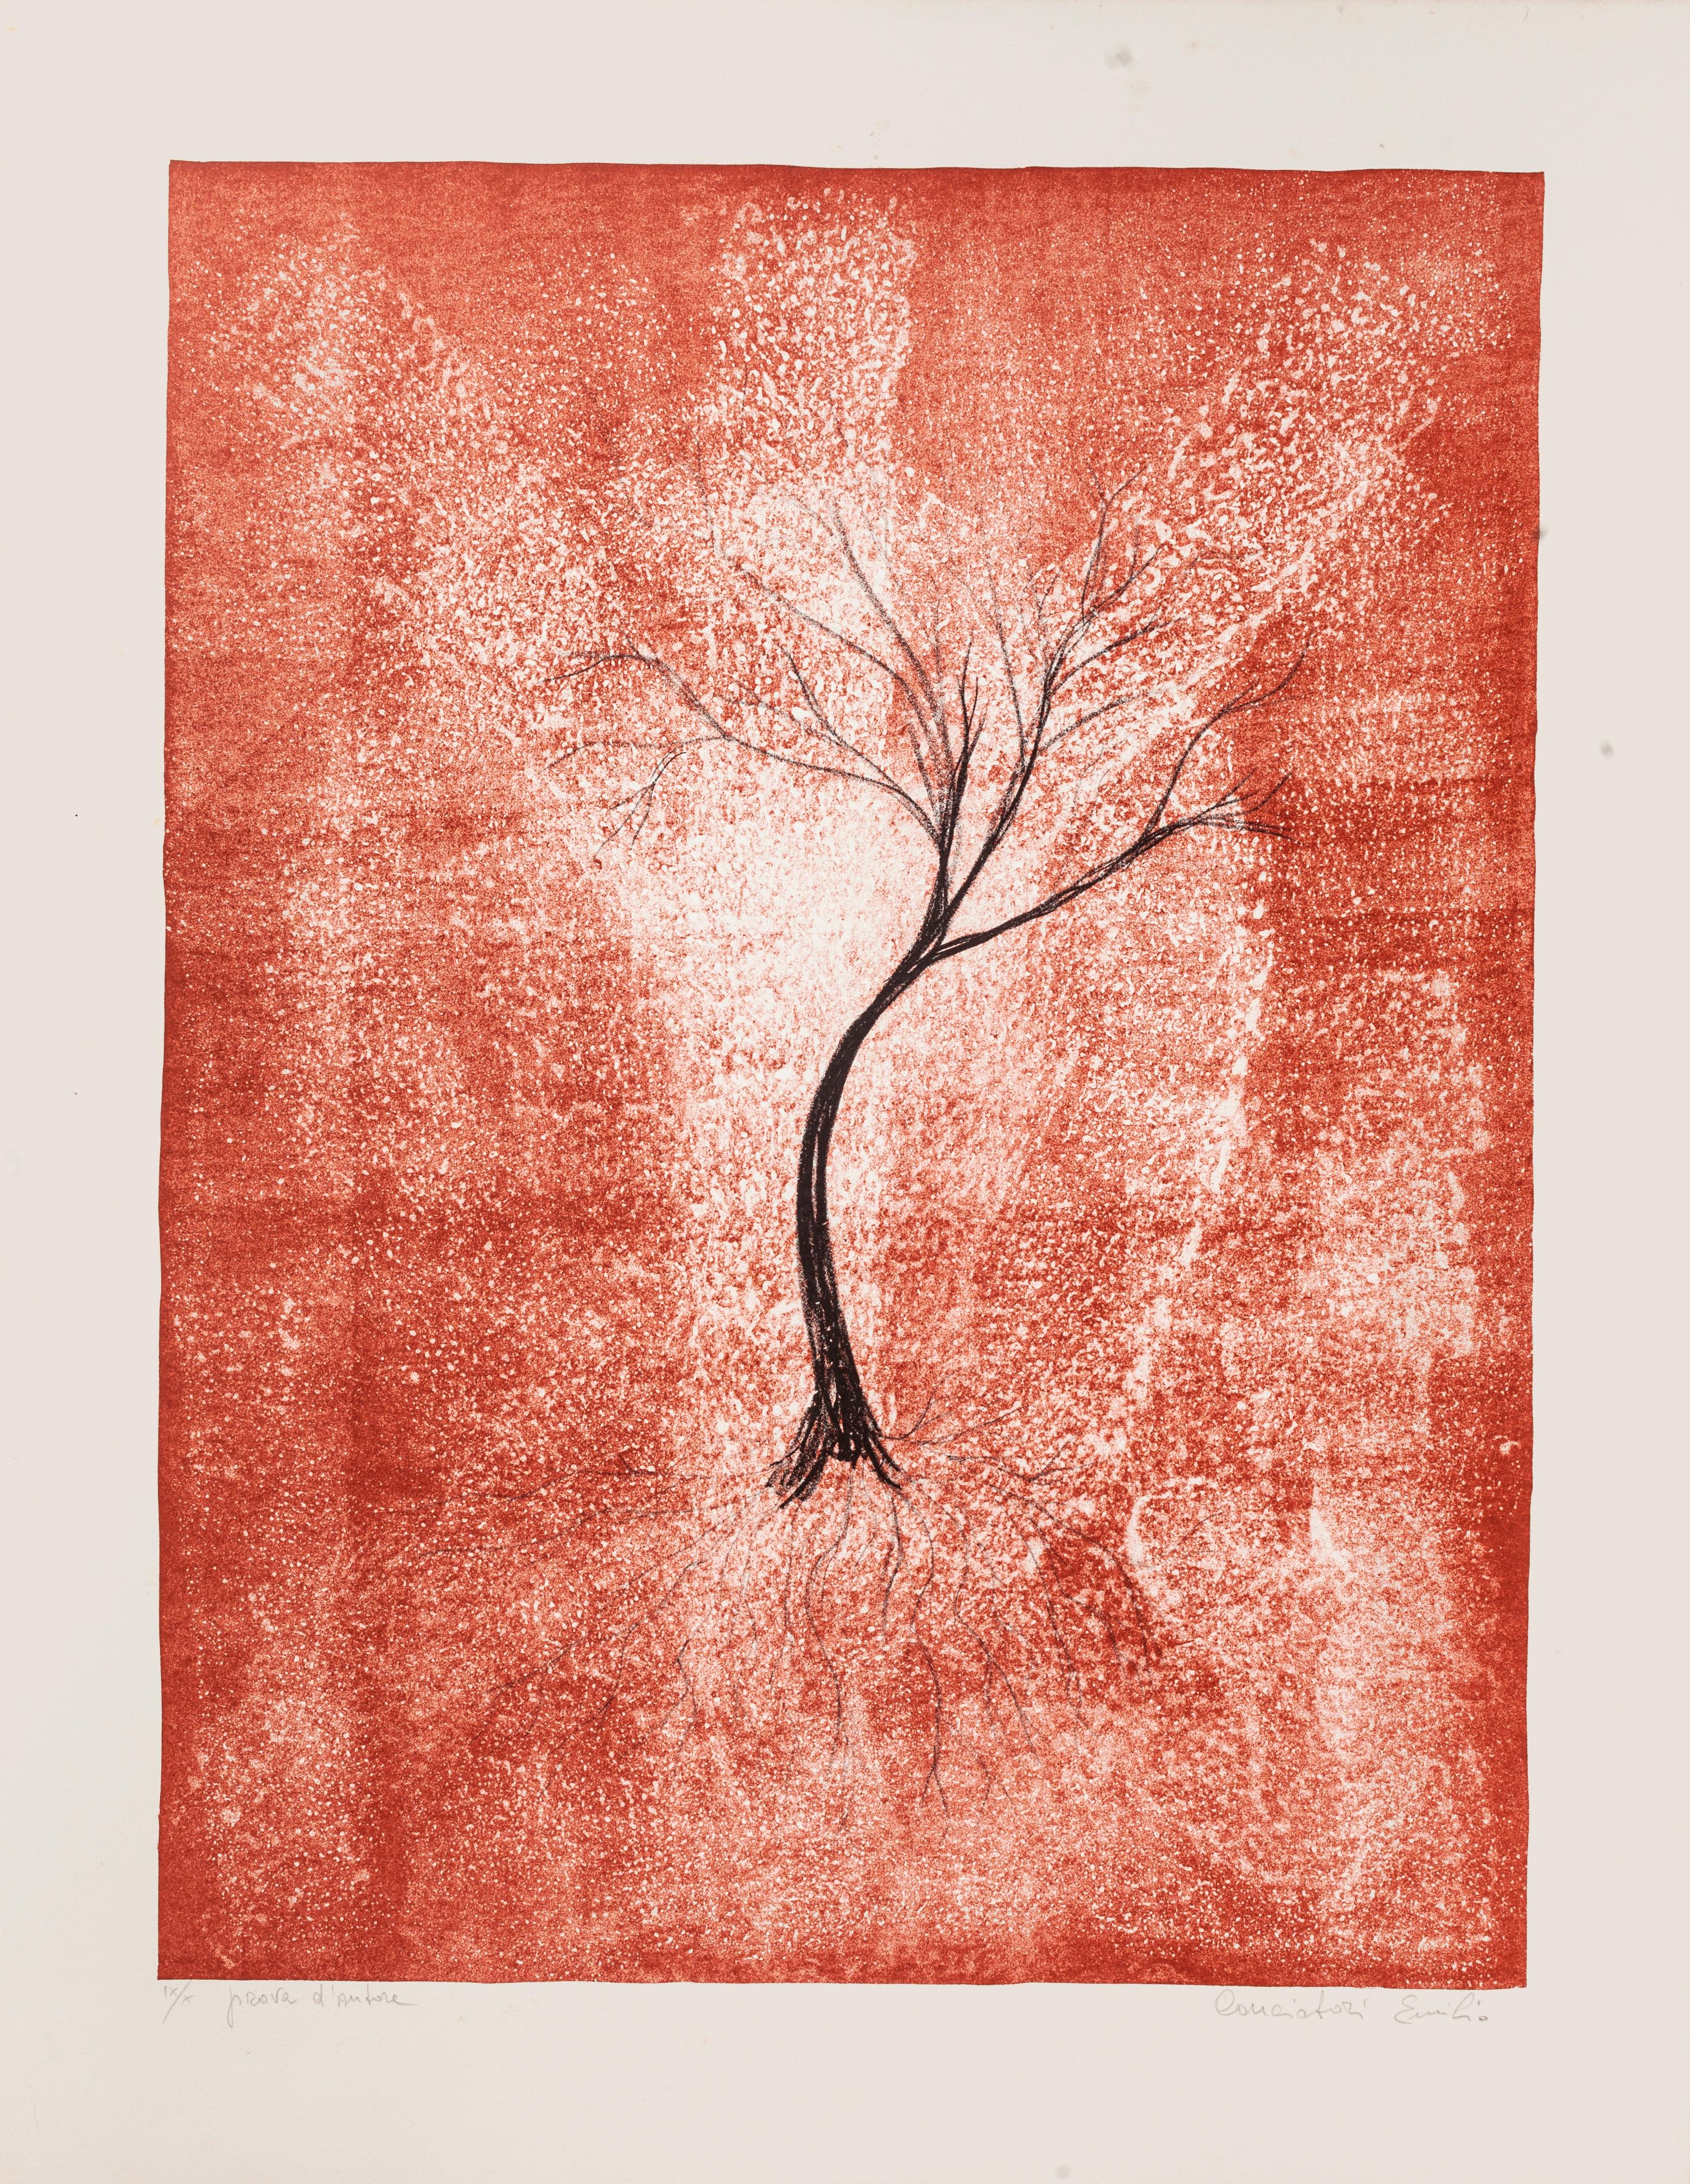 Emilio Conciatori Figurative Print - Tree - Original Lithograph by E. Conciatori - 1970s